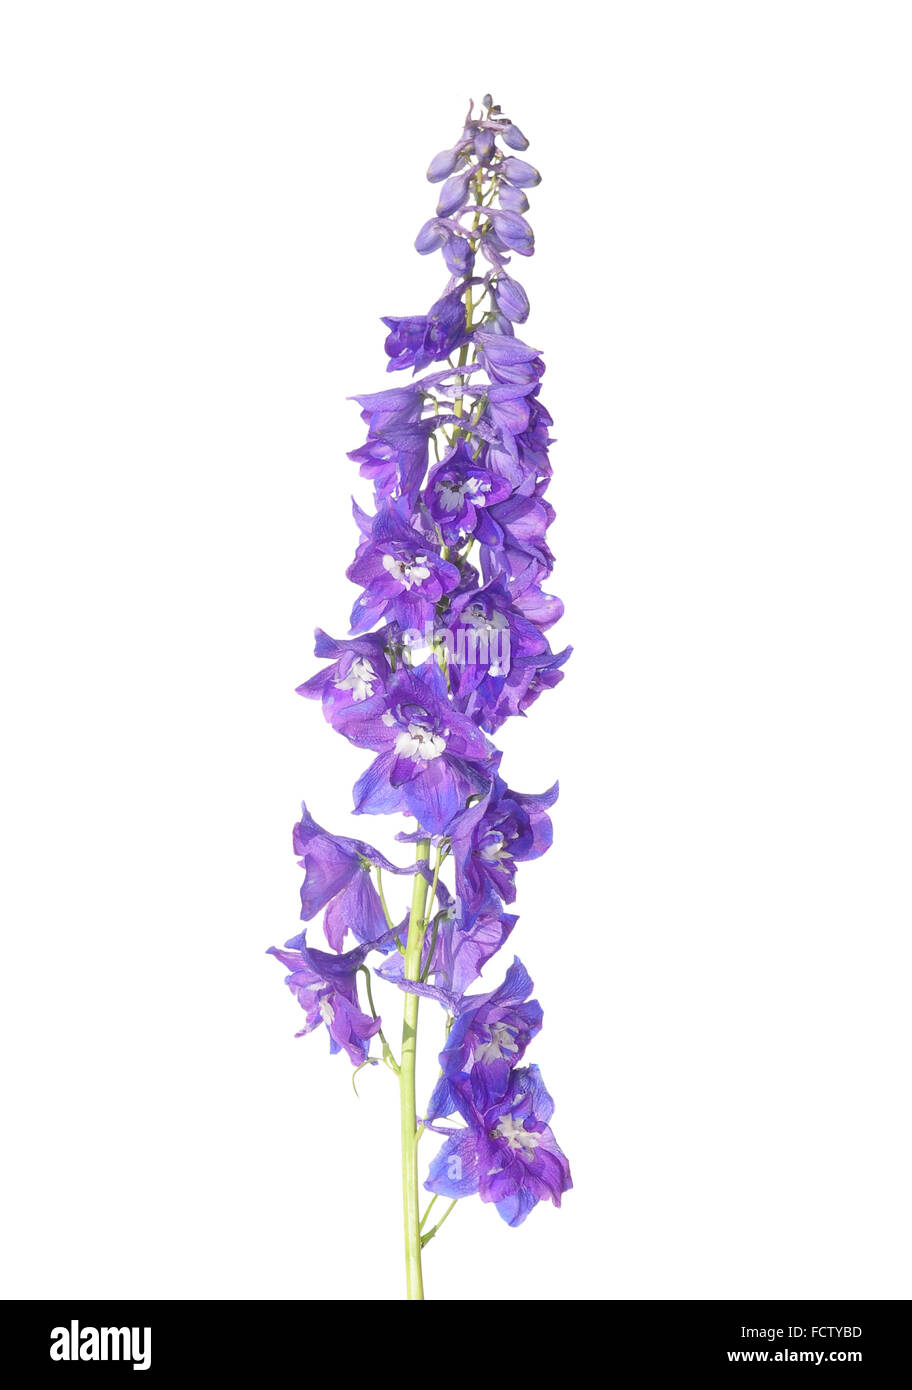 Delphinium flower Stock Photo